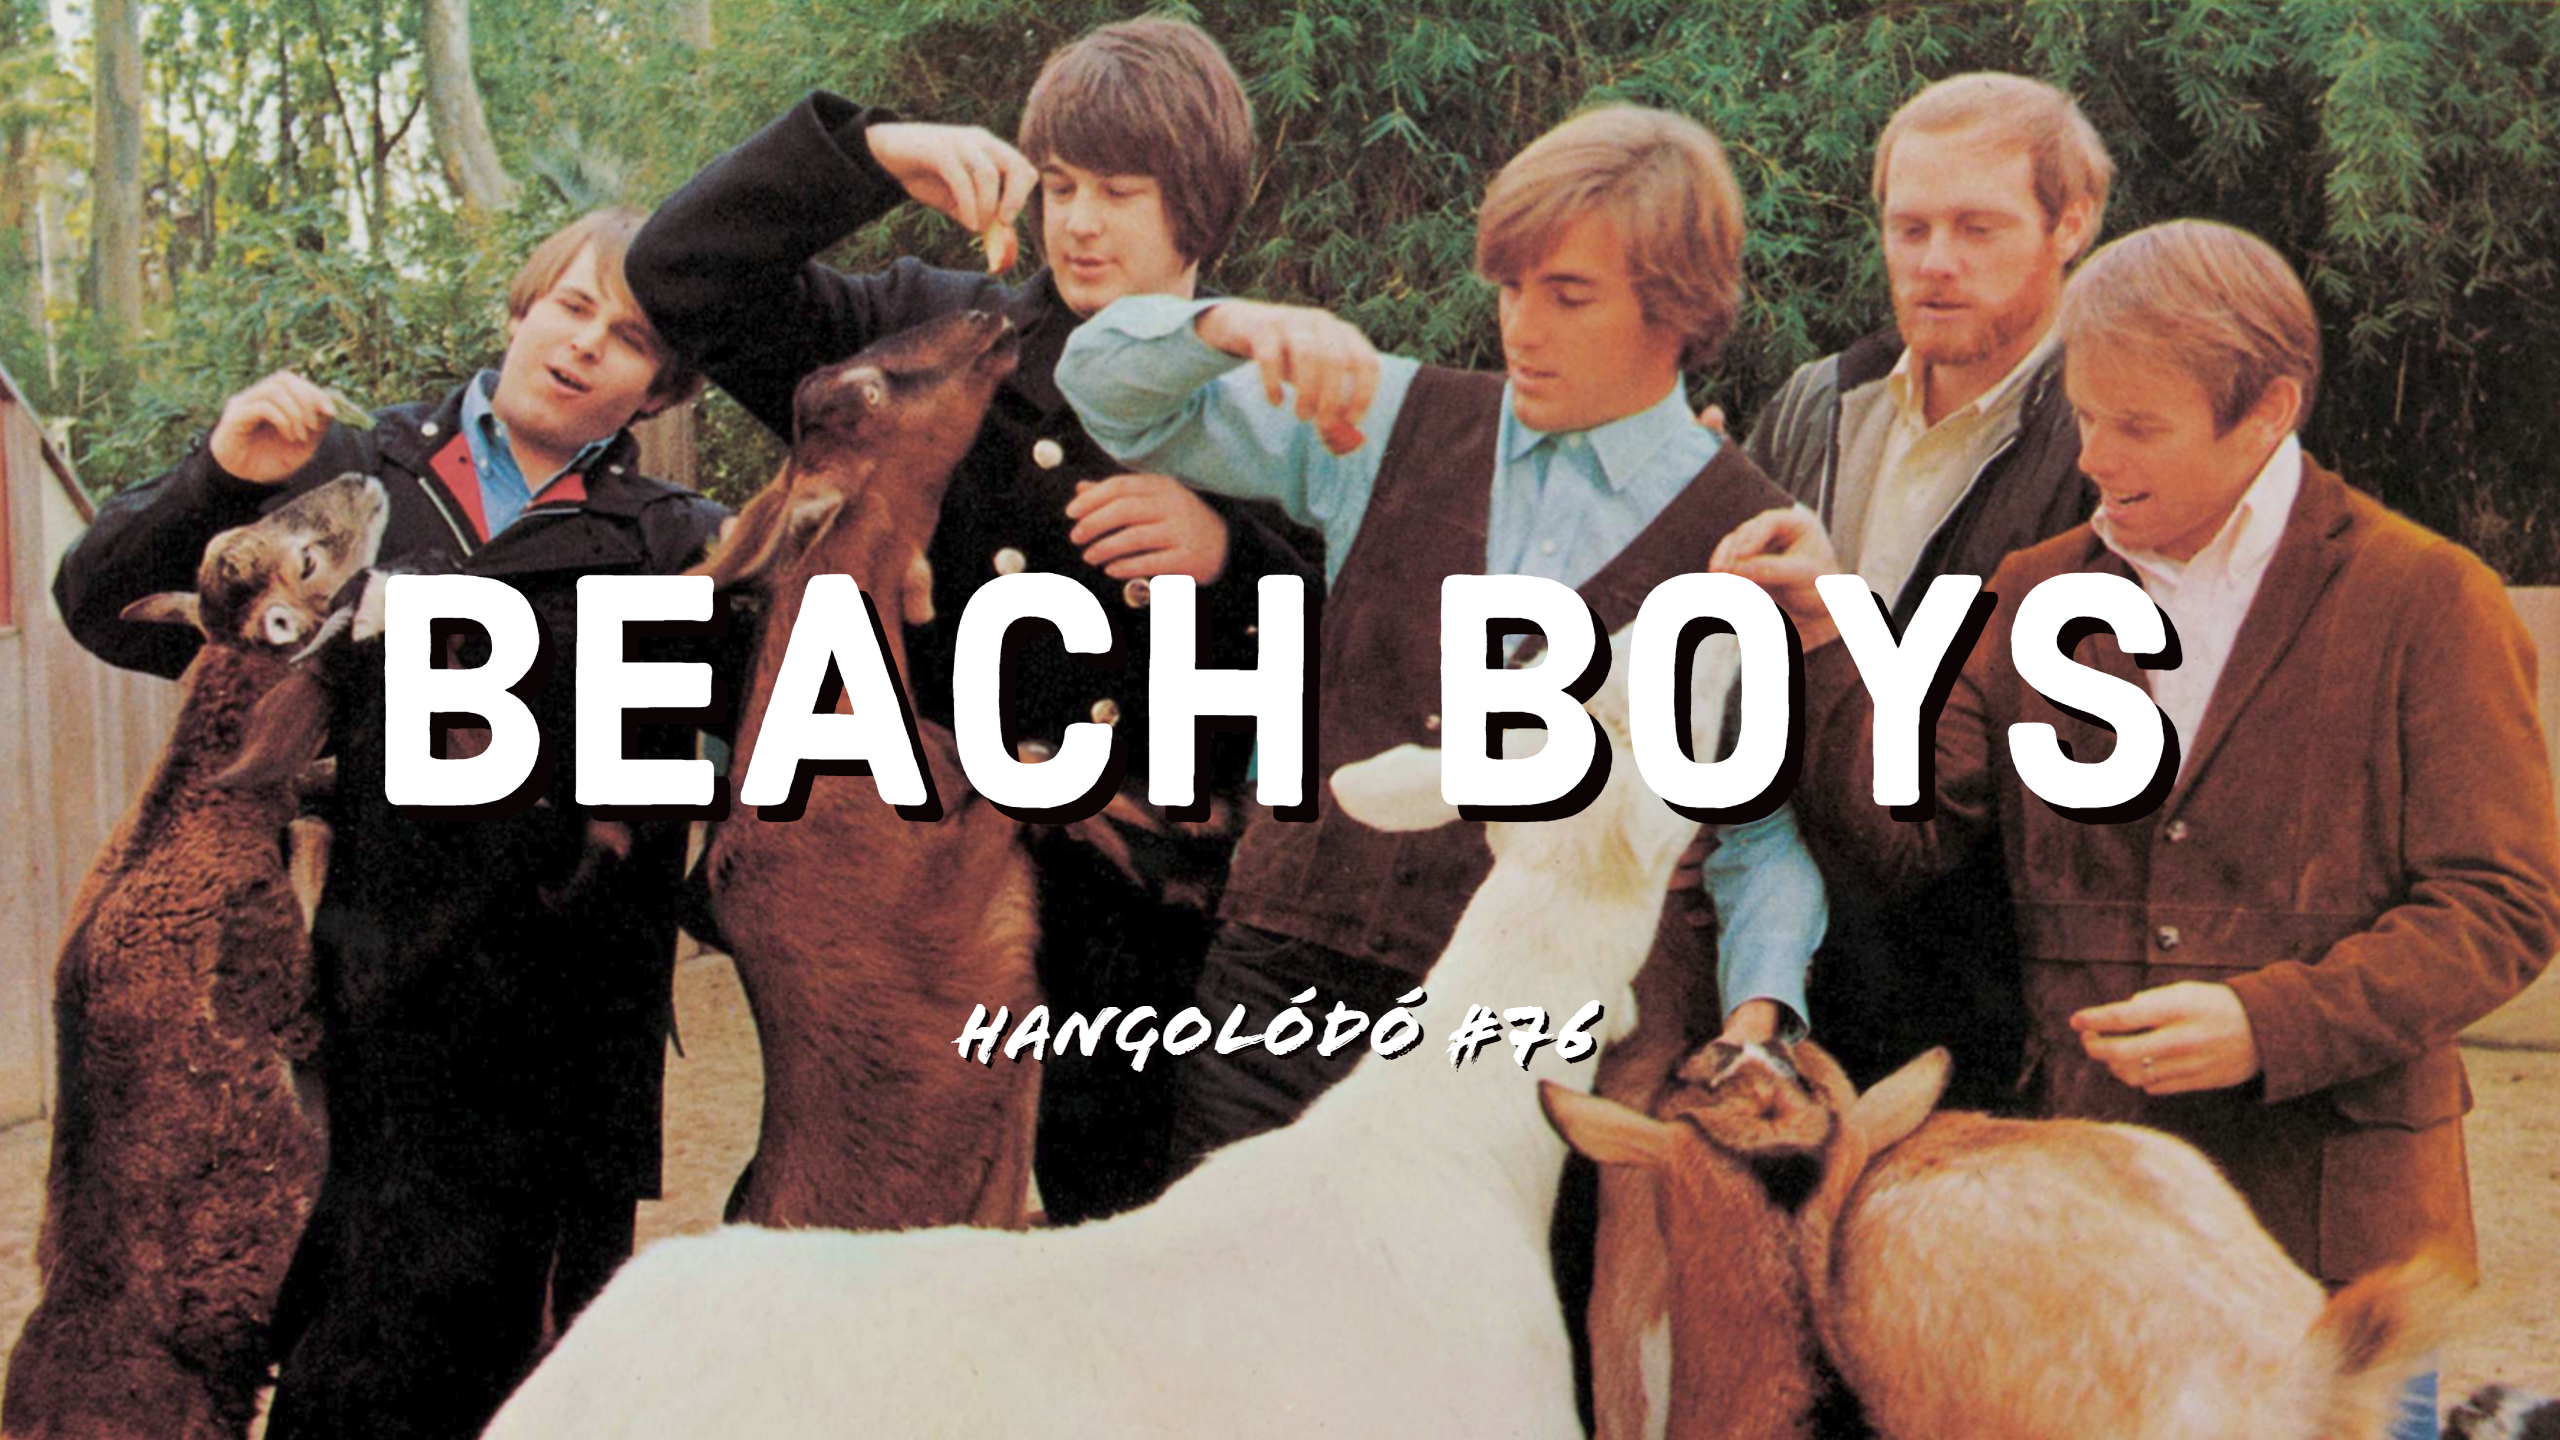 Hangolódó #76 | The Beach Boys